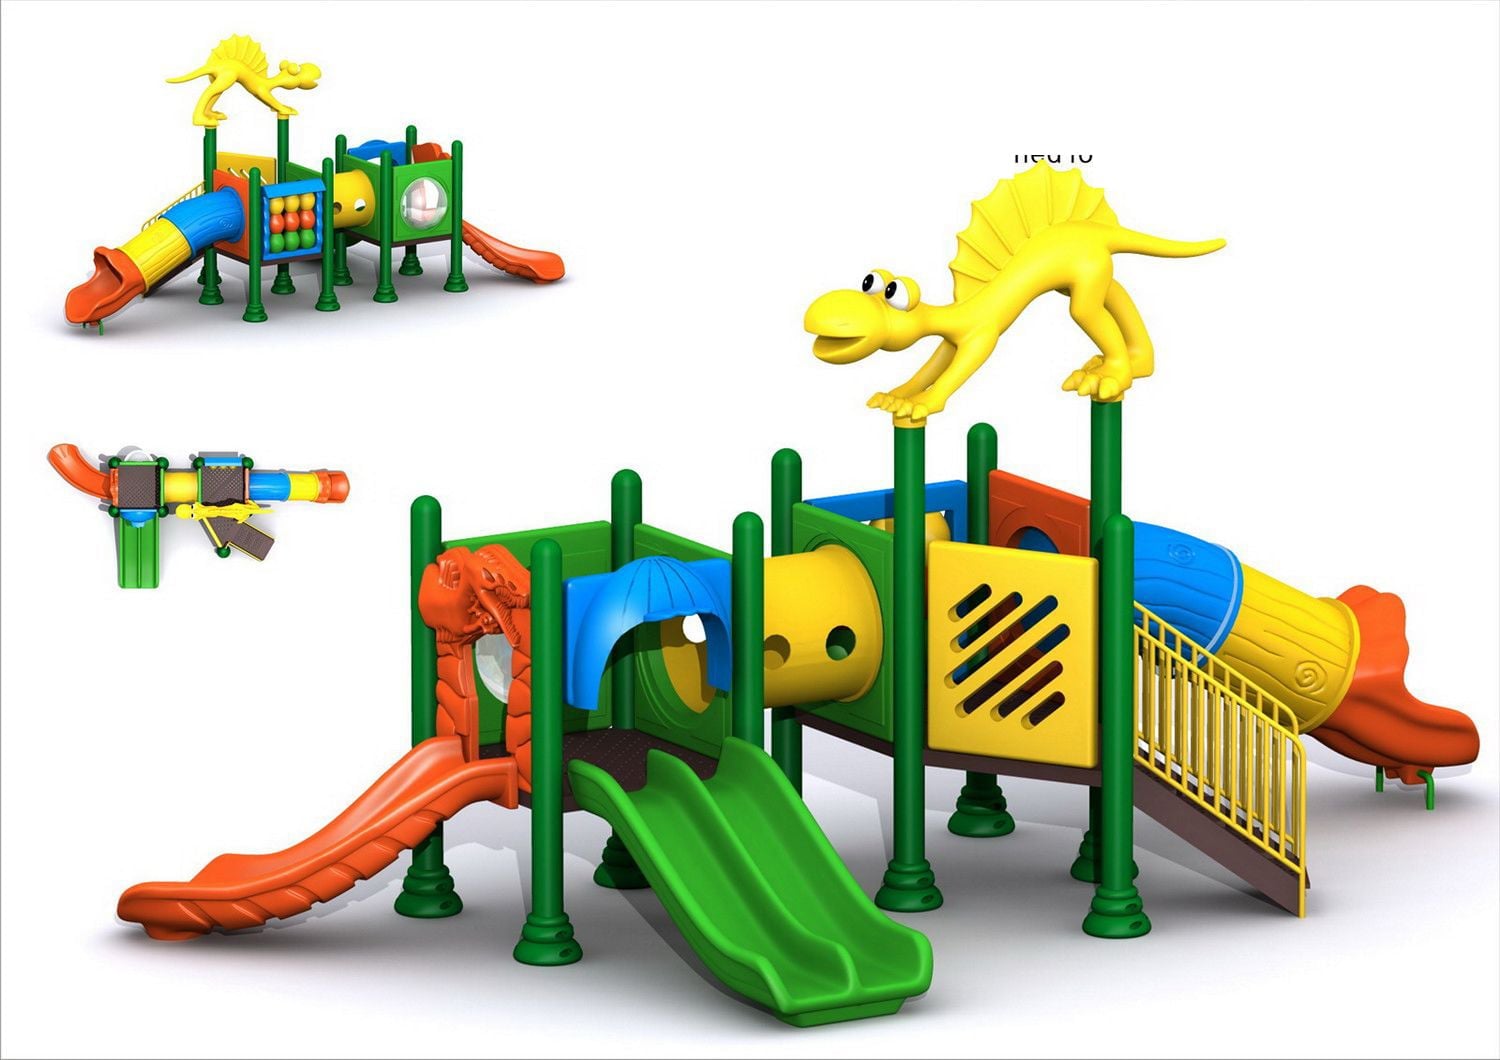 Игровой комлекс-площадка для детей Dinosaur Series HDS-ZR299